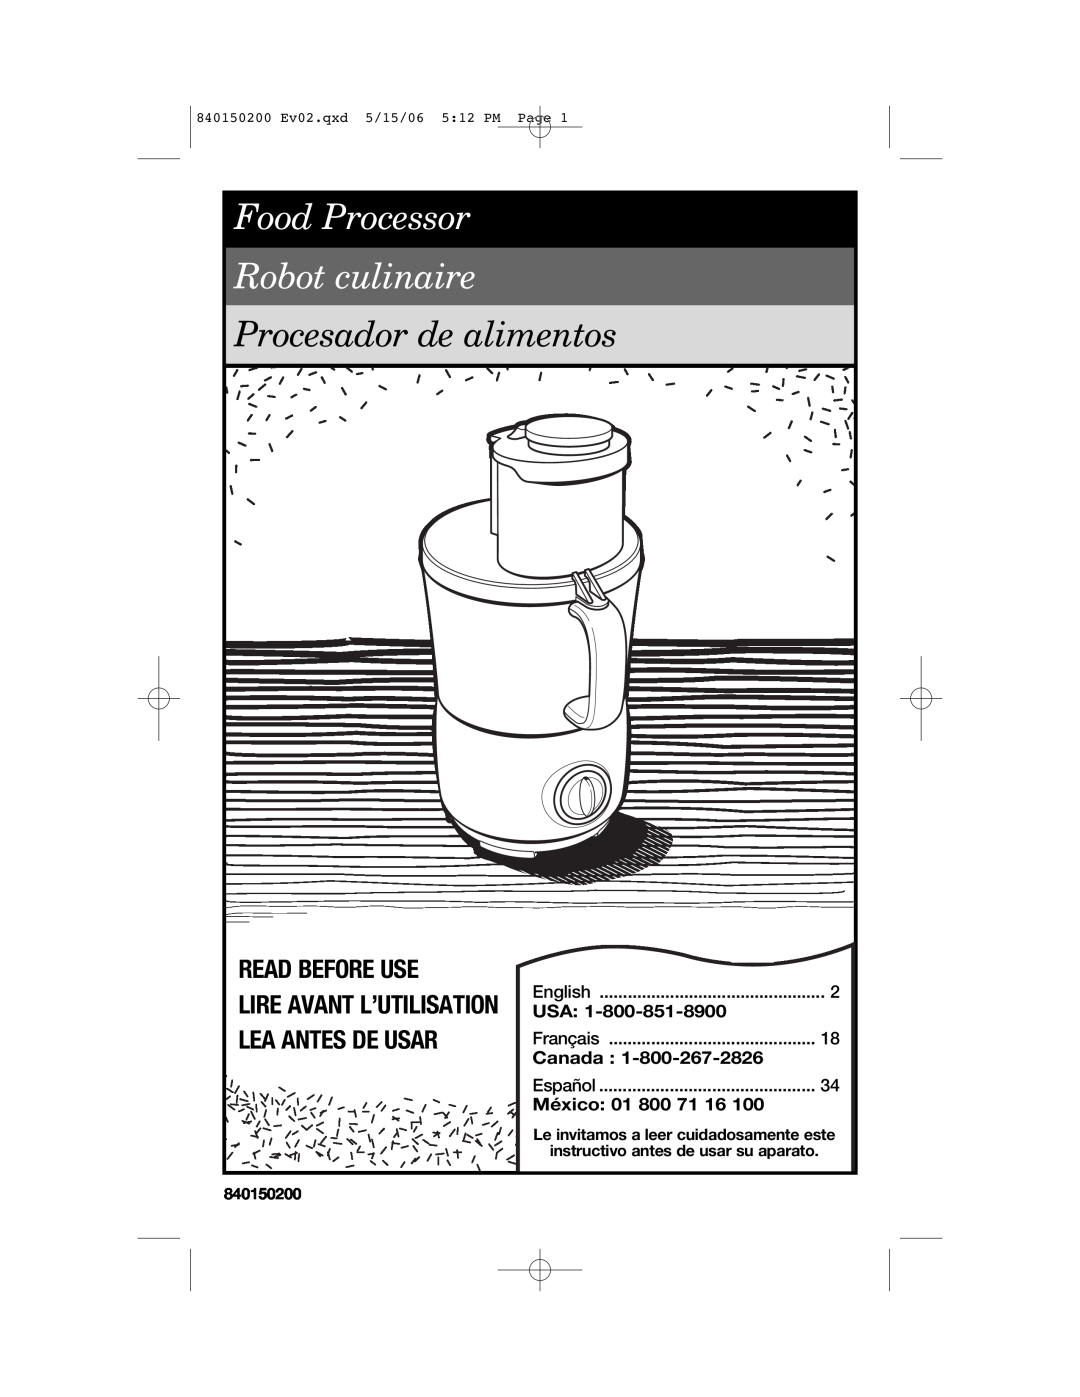 Proctor-Silex 840150200 manual Read Before Use, Lire Avant L’Utilisation Lea Antes De Usar, Canada, México 01 